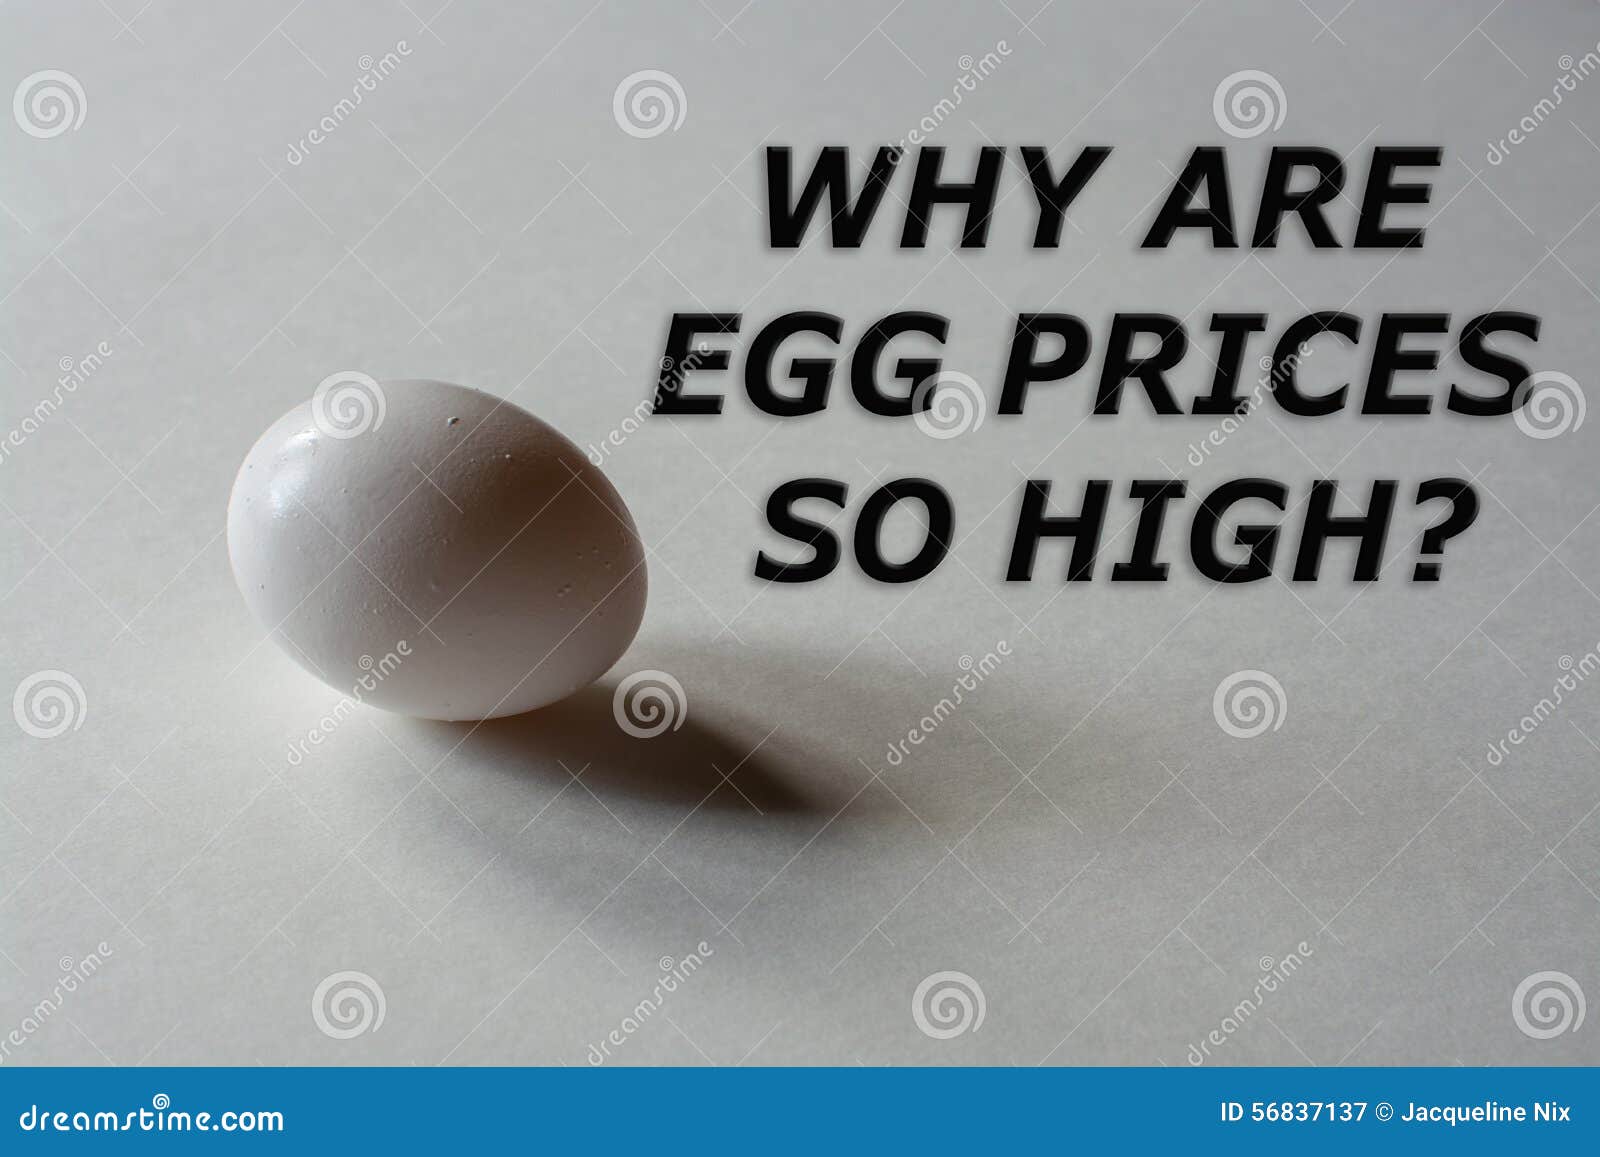 Сколько стоит мужское яйцо цена. Сколько стоит человеческое яйцо. Картинки сколько стоят яички на рынке. Сколько стоит продать яичко.